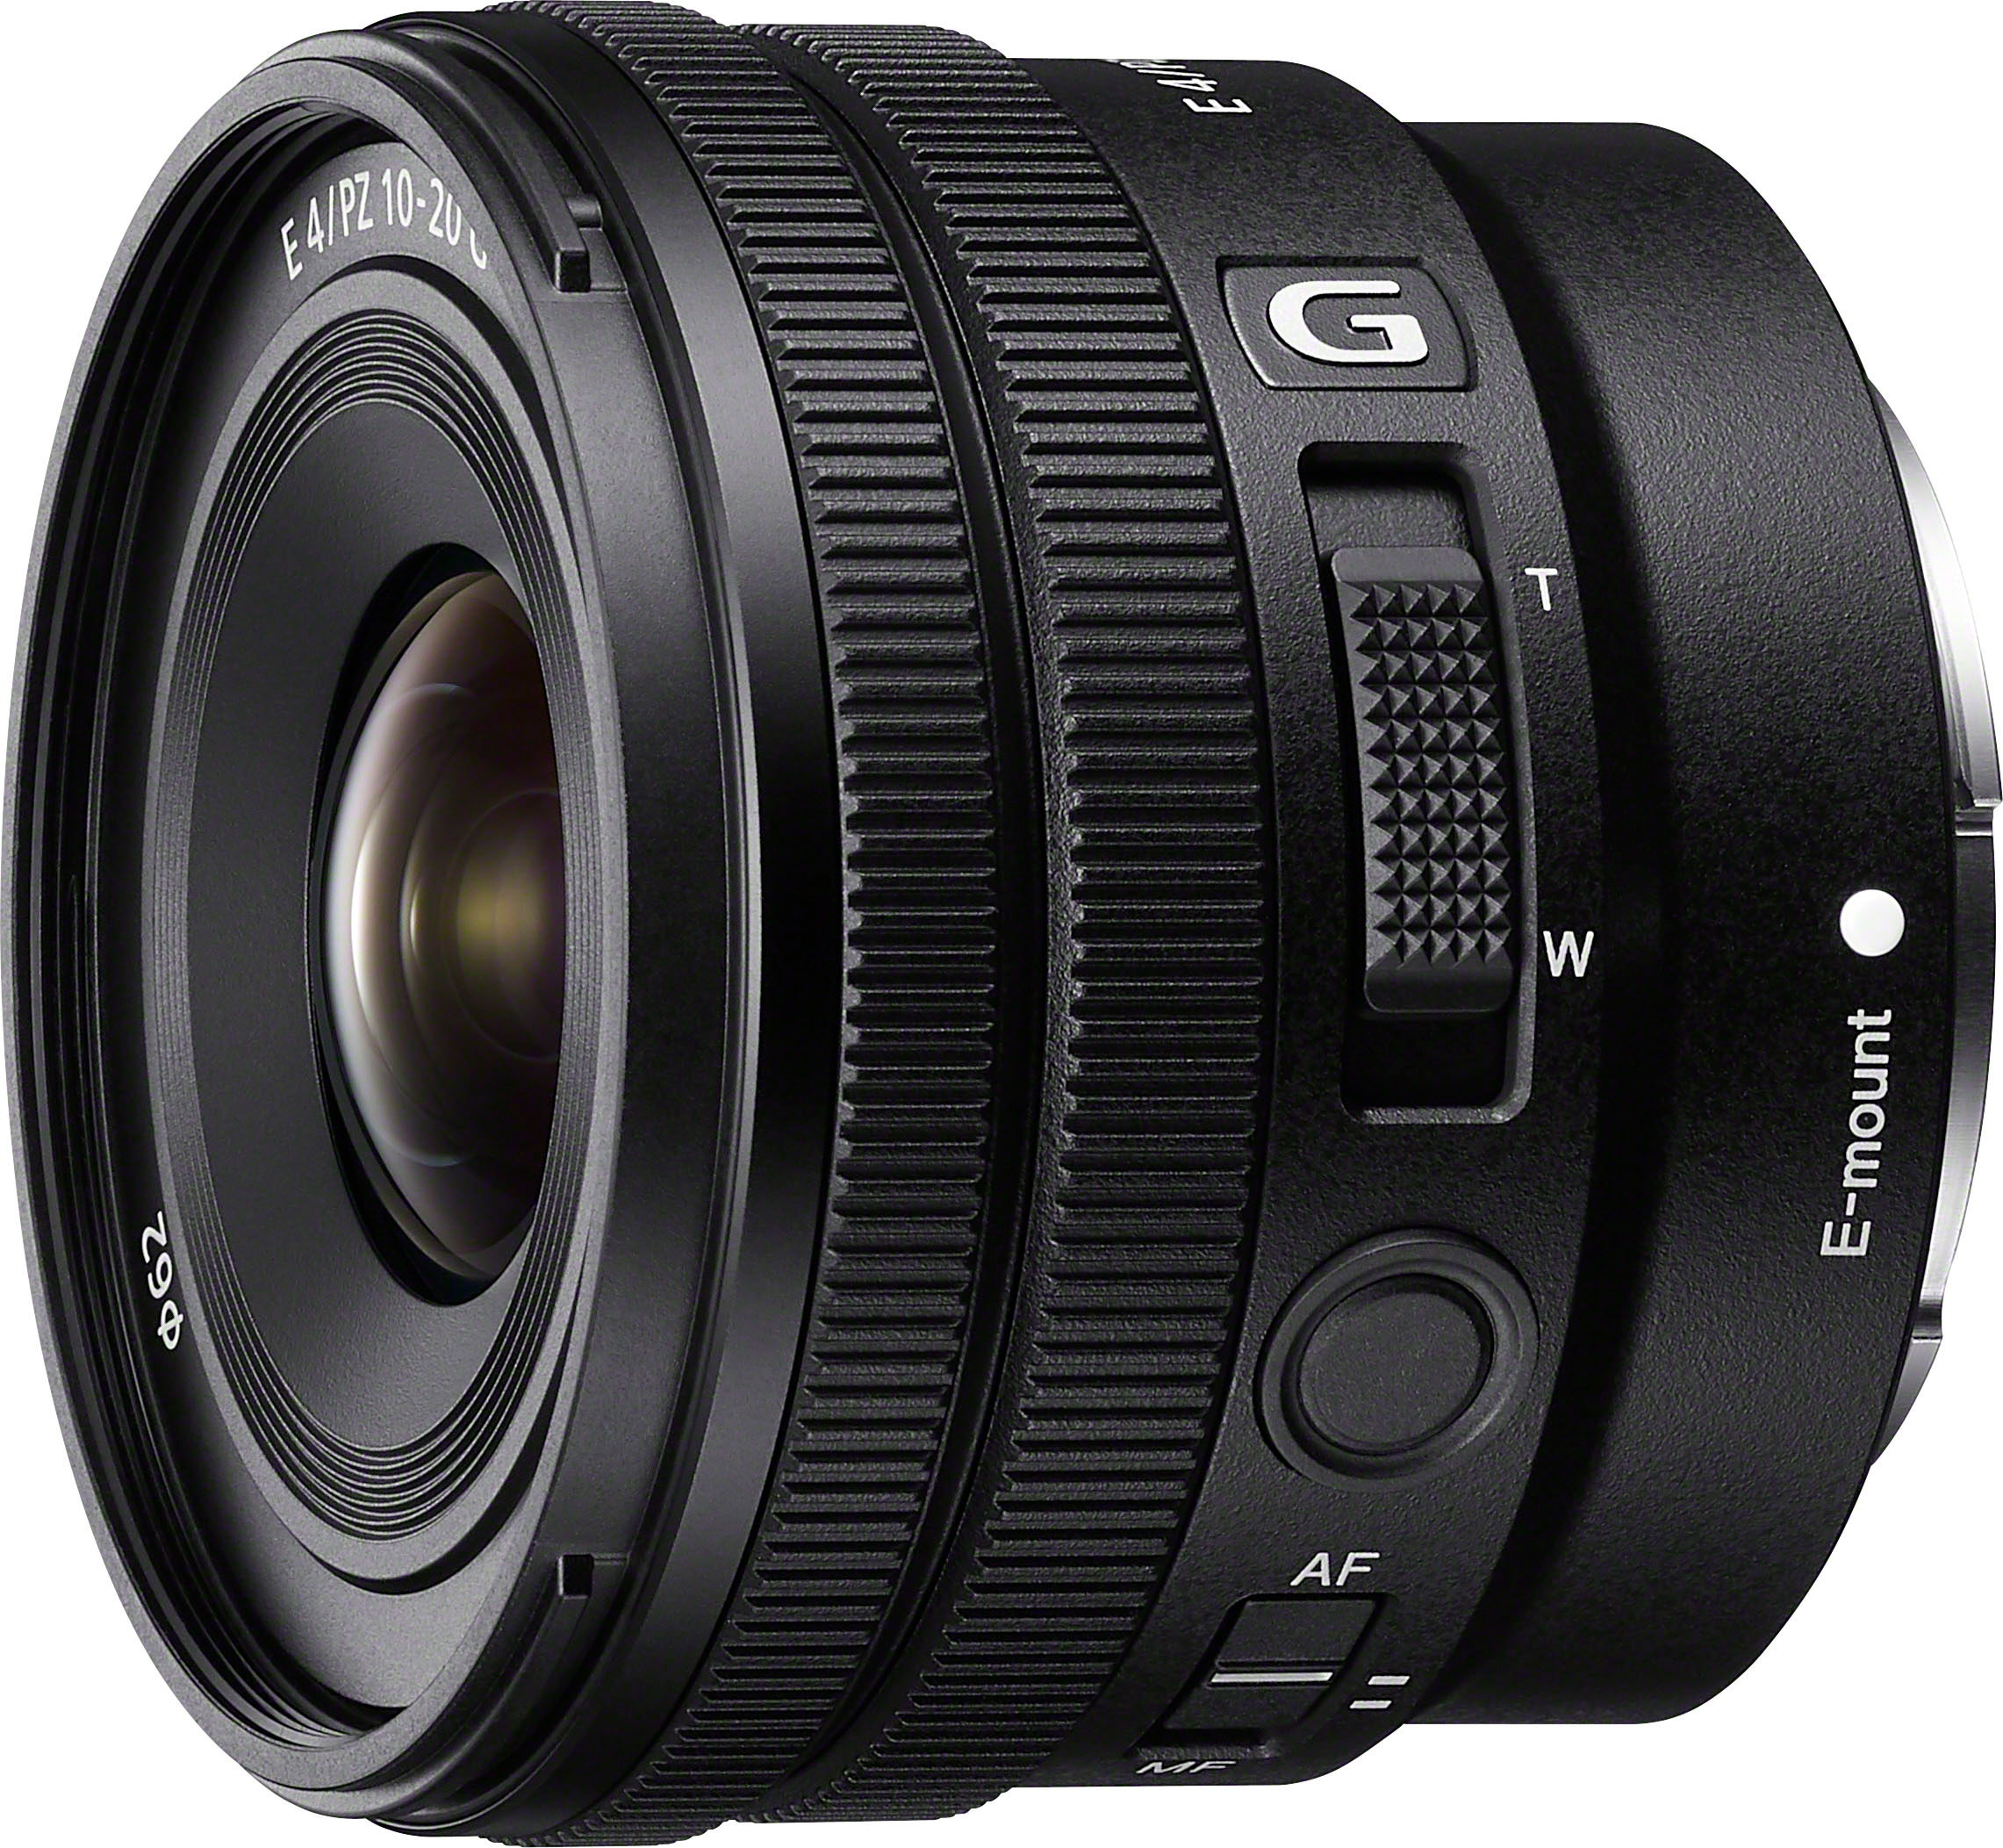 Angle View: Sony - E PZ 10-20mm F4 G APS-C constant aperture power zoom lens G lens - Black